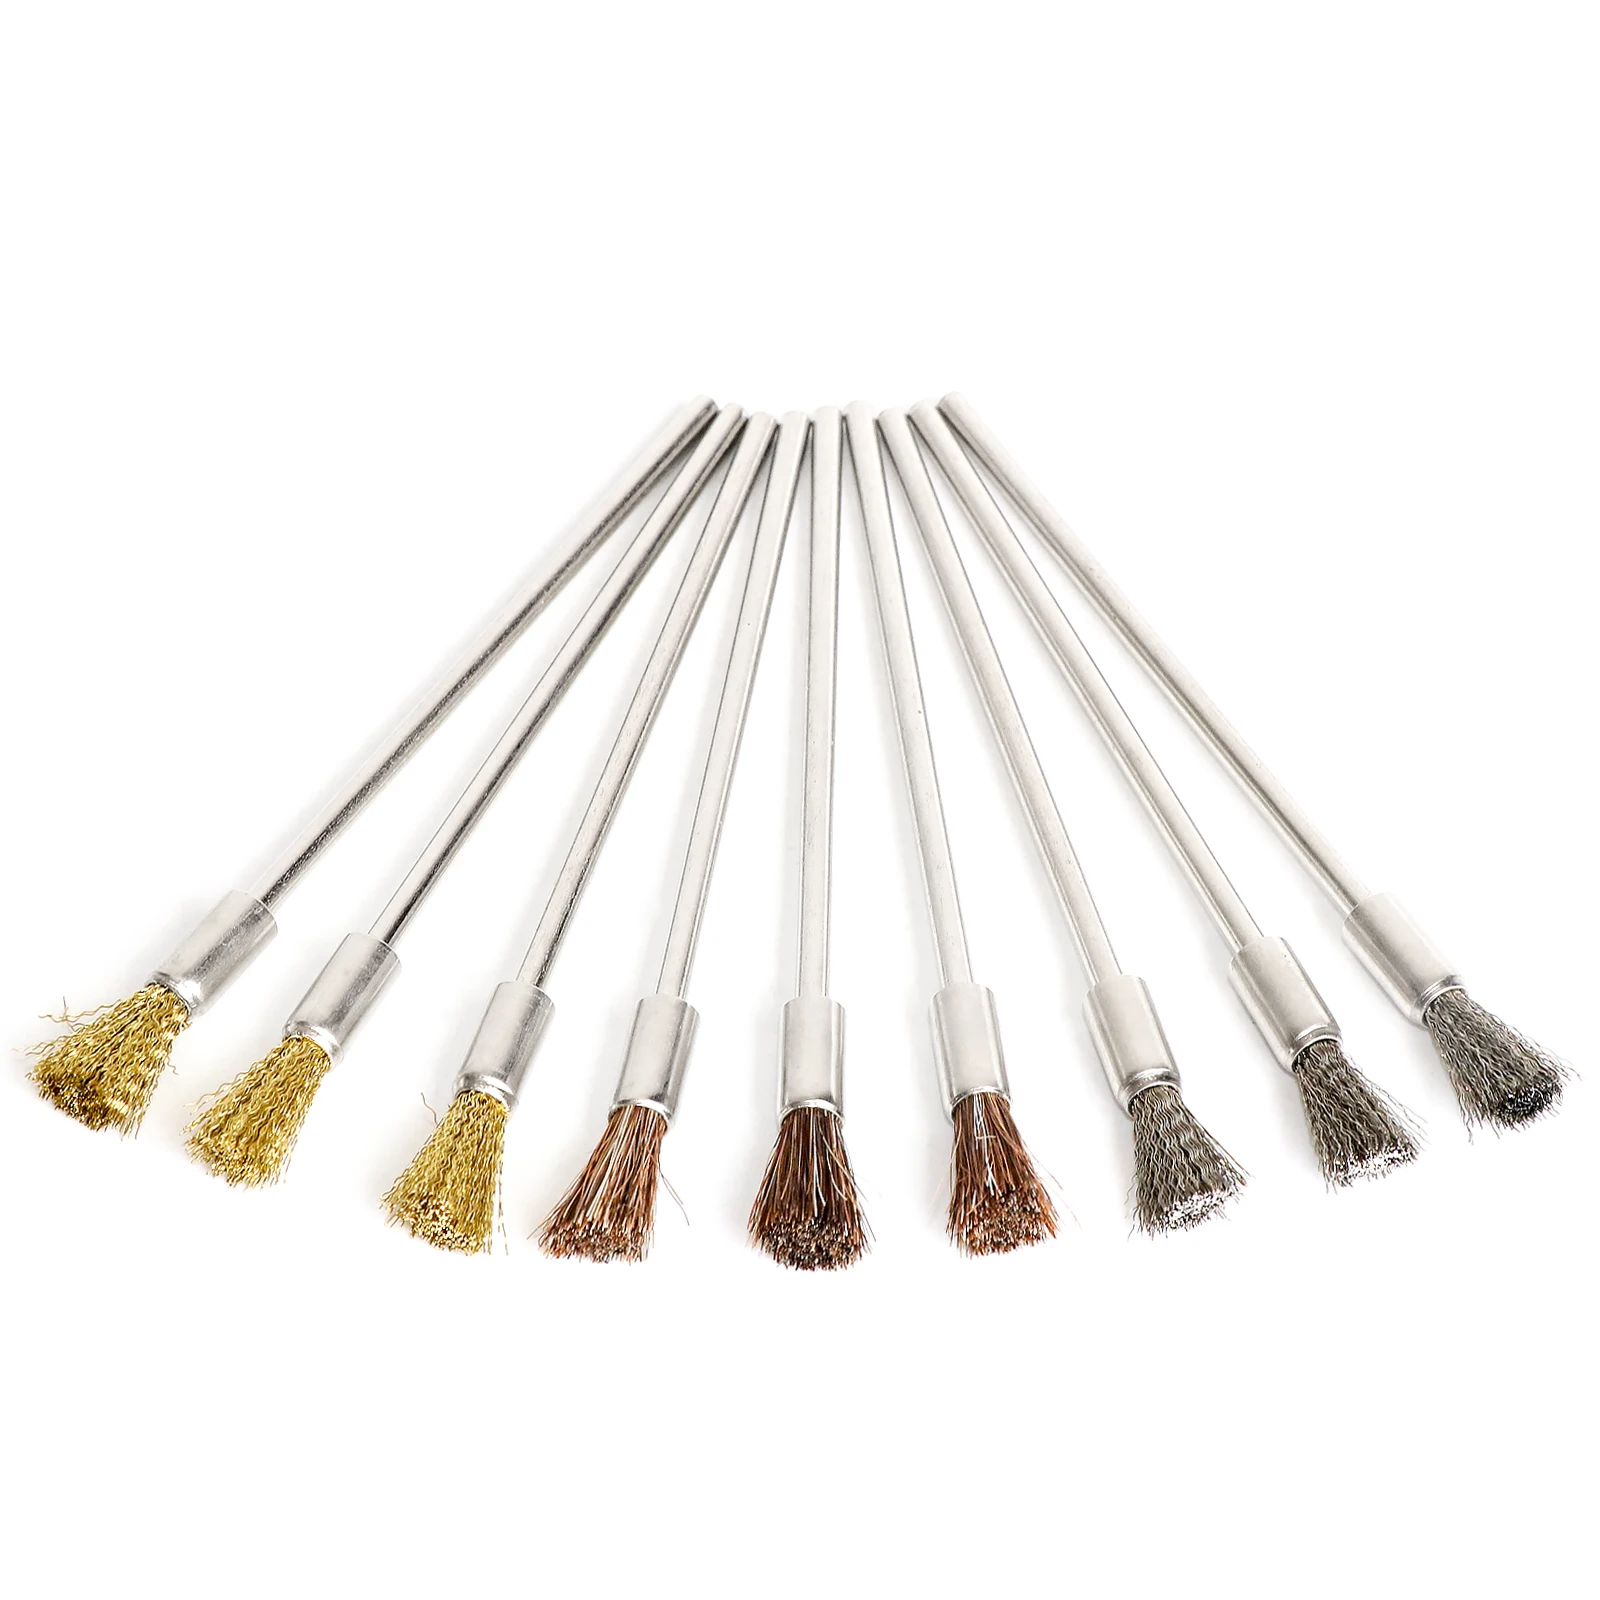 NGe nge 10pcs brass wire brushes set, pen shape polishing wire